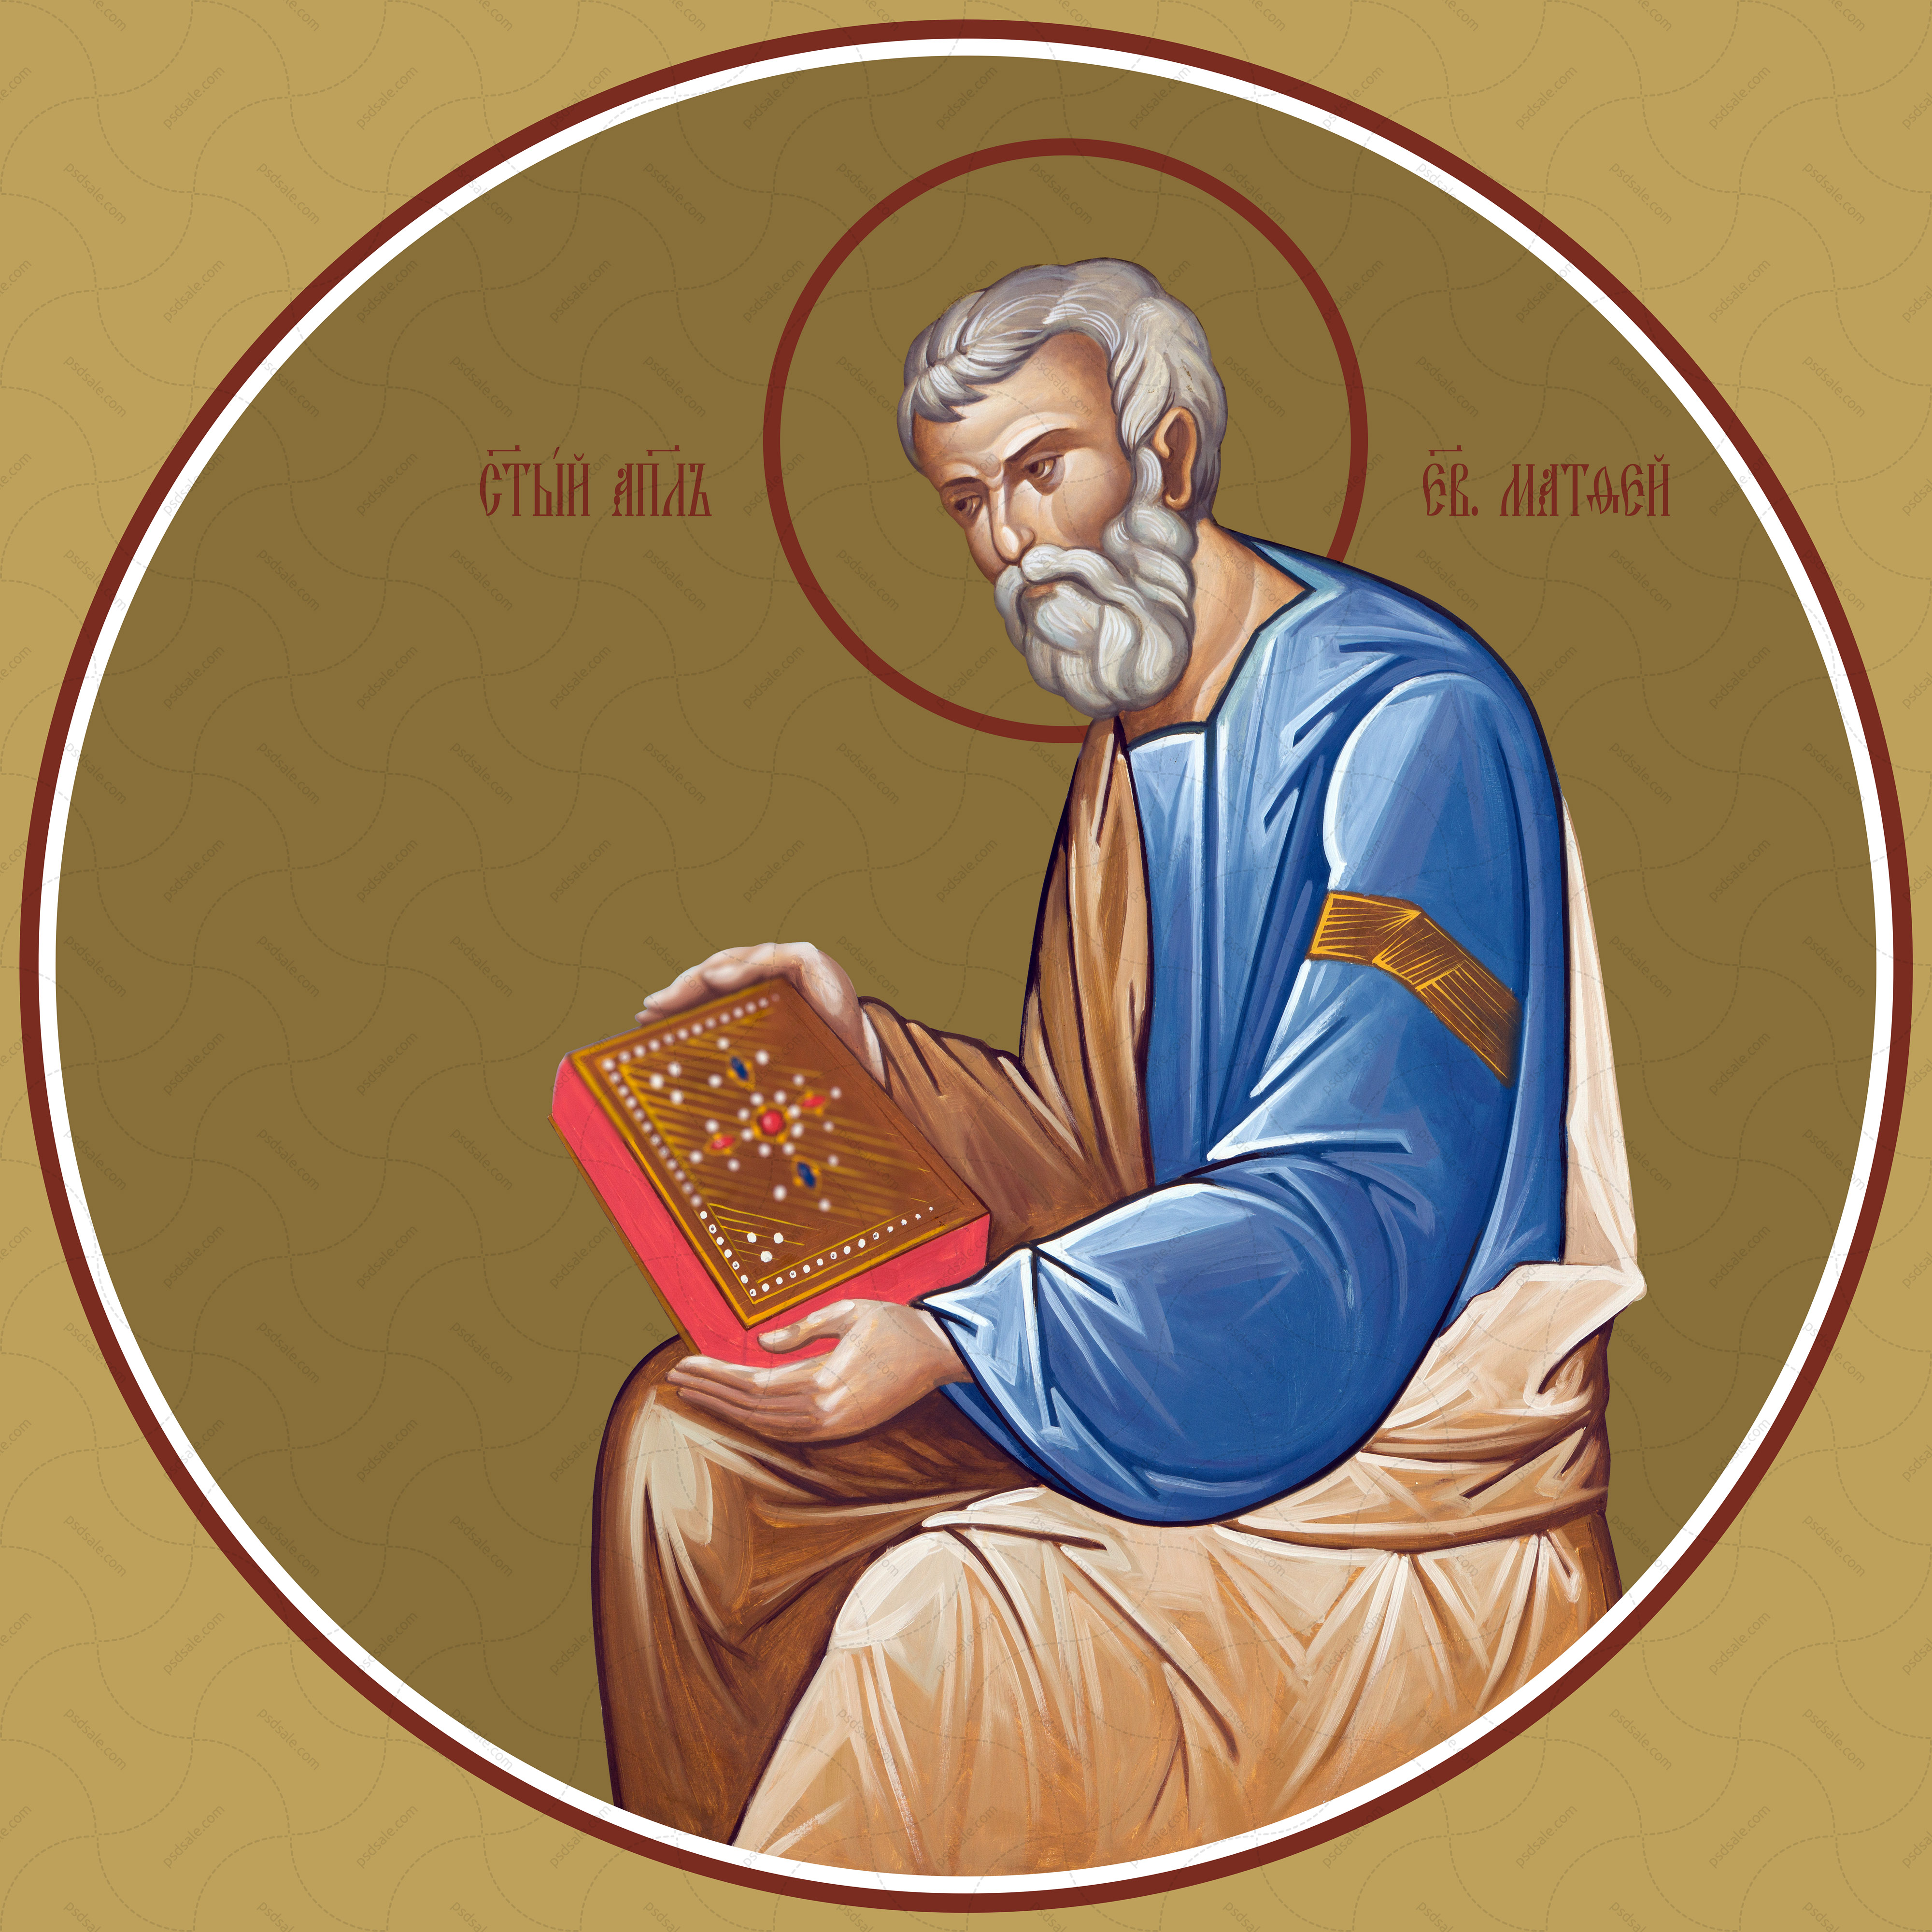 Matthew, the evangelist (for iconostasis)